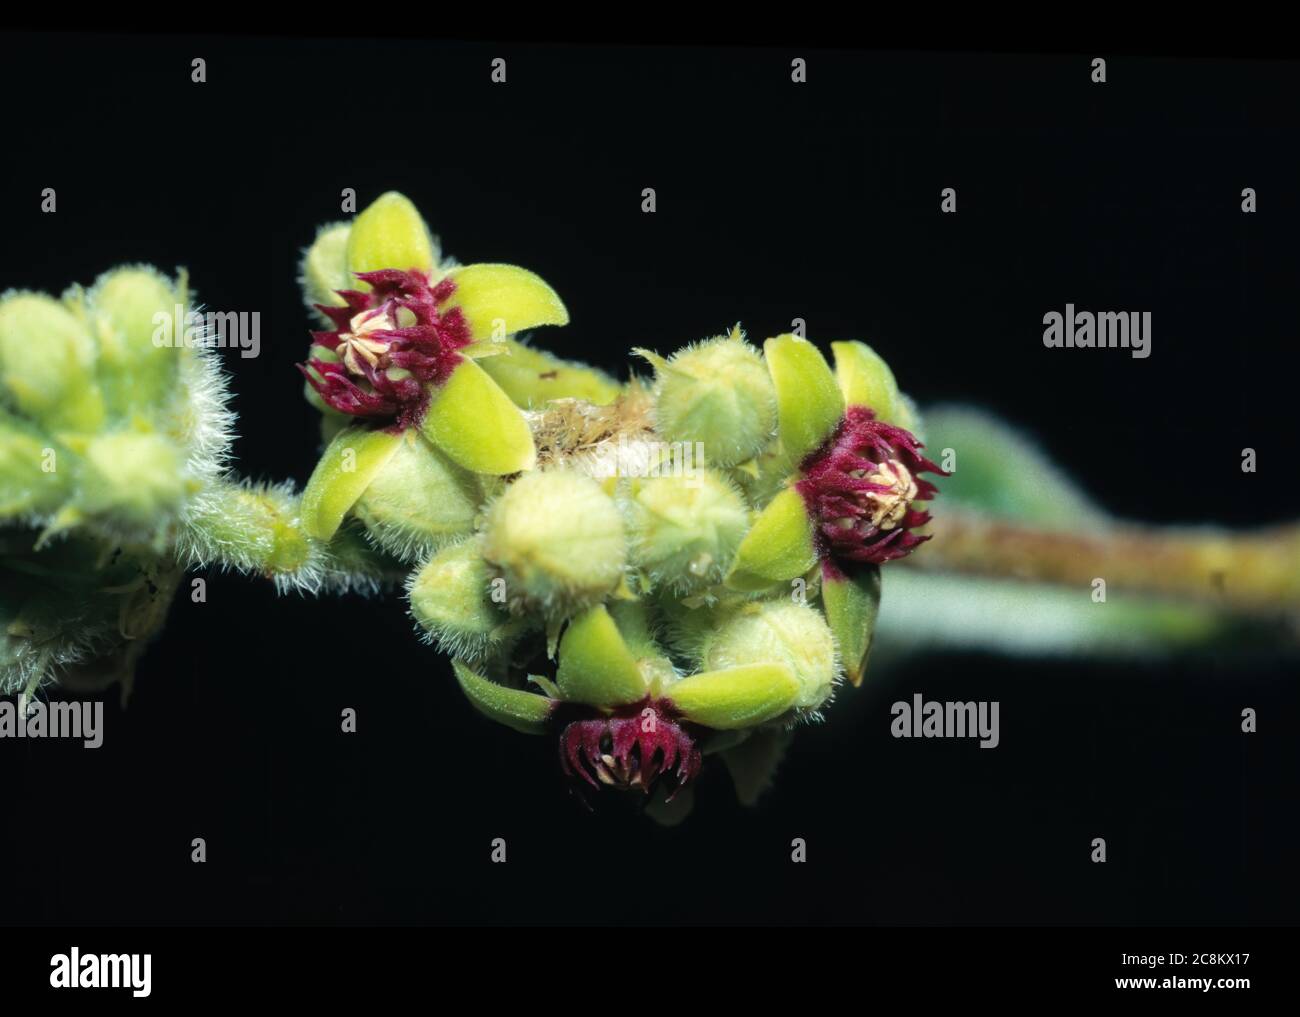 Flower of Raphionacme Plant (Raphionacme procumbens) Stock Photo